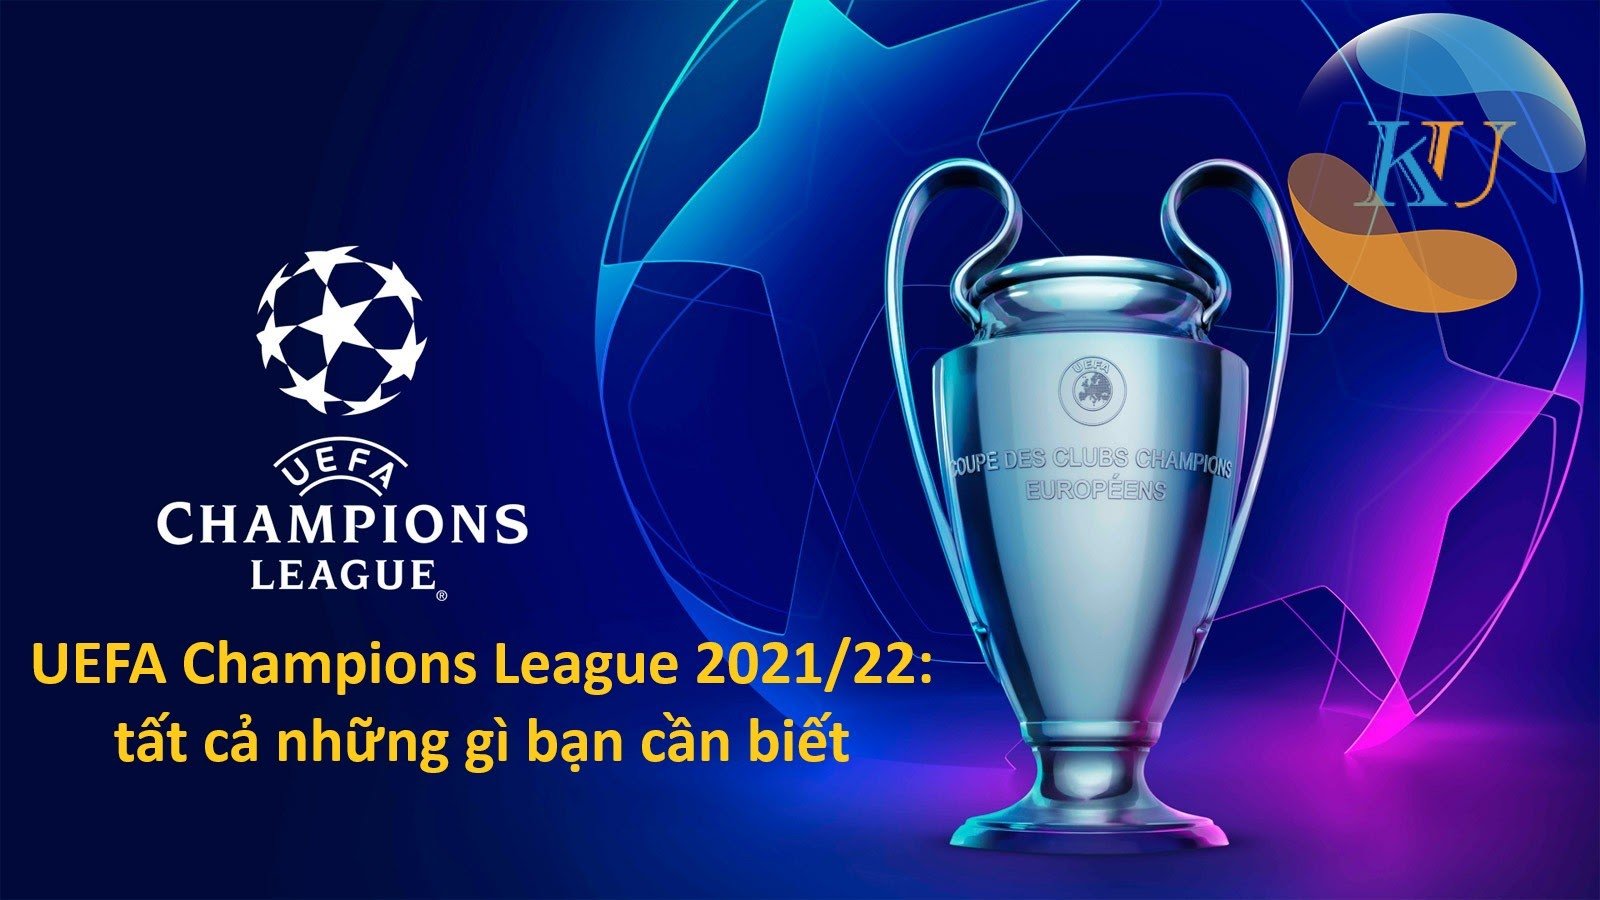 UEFA Champions League 2021/22: tất cả những gì bạn cần biết